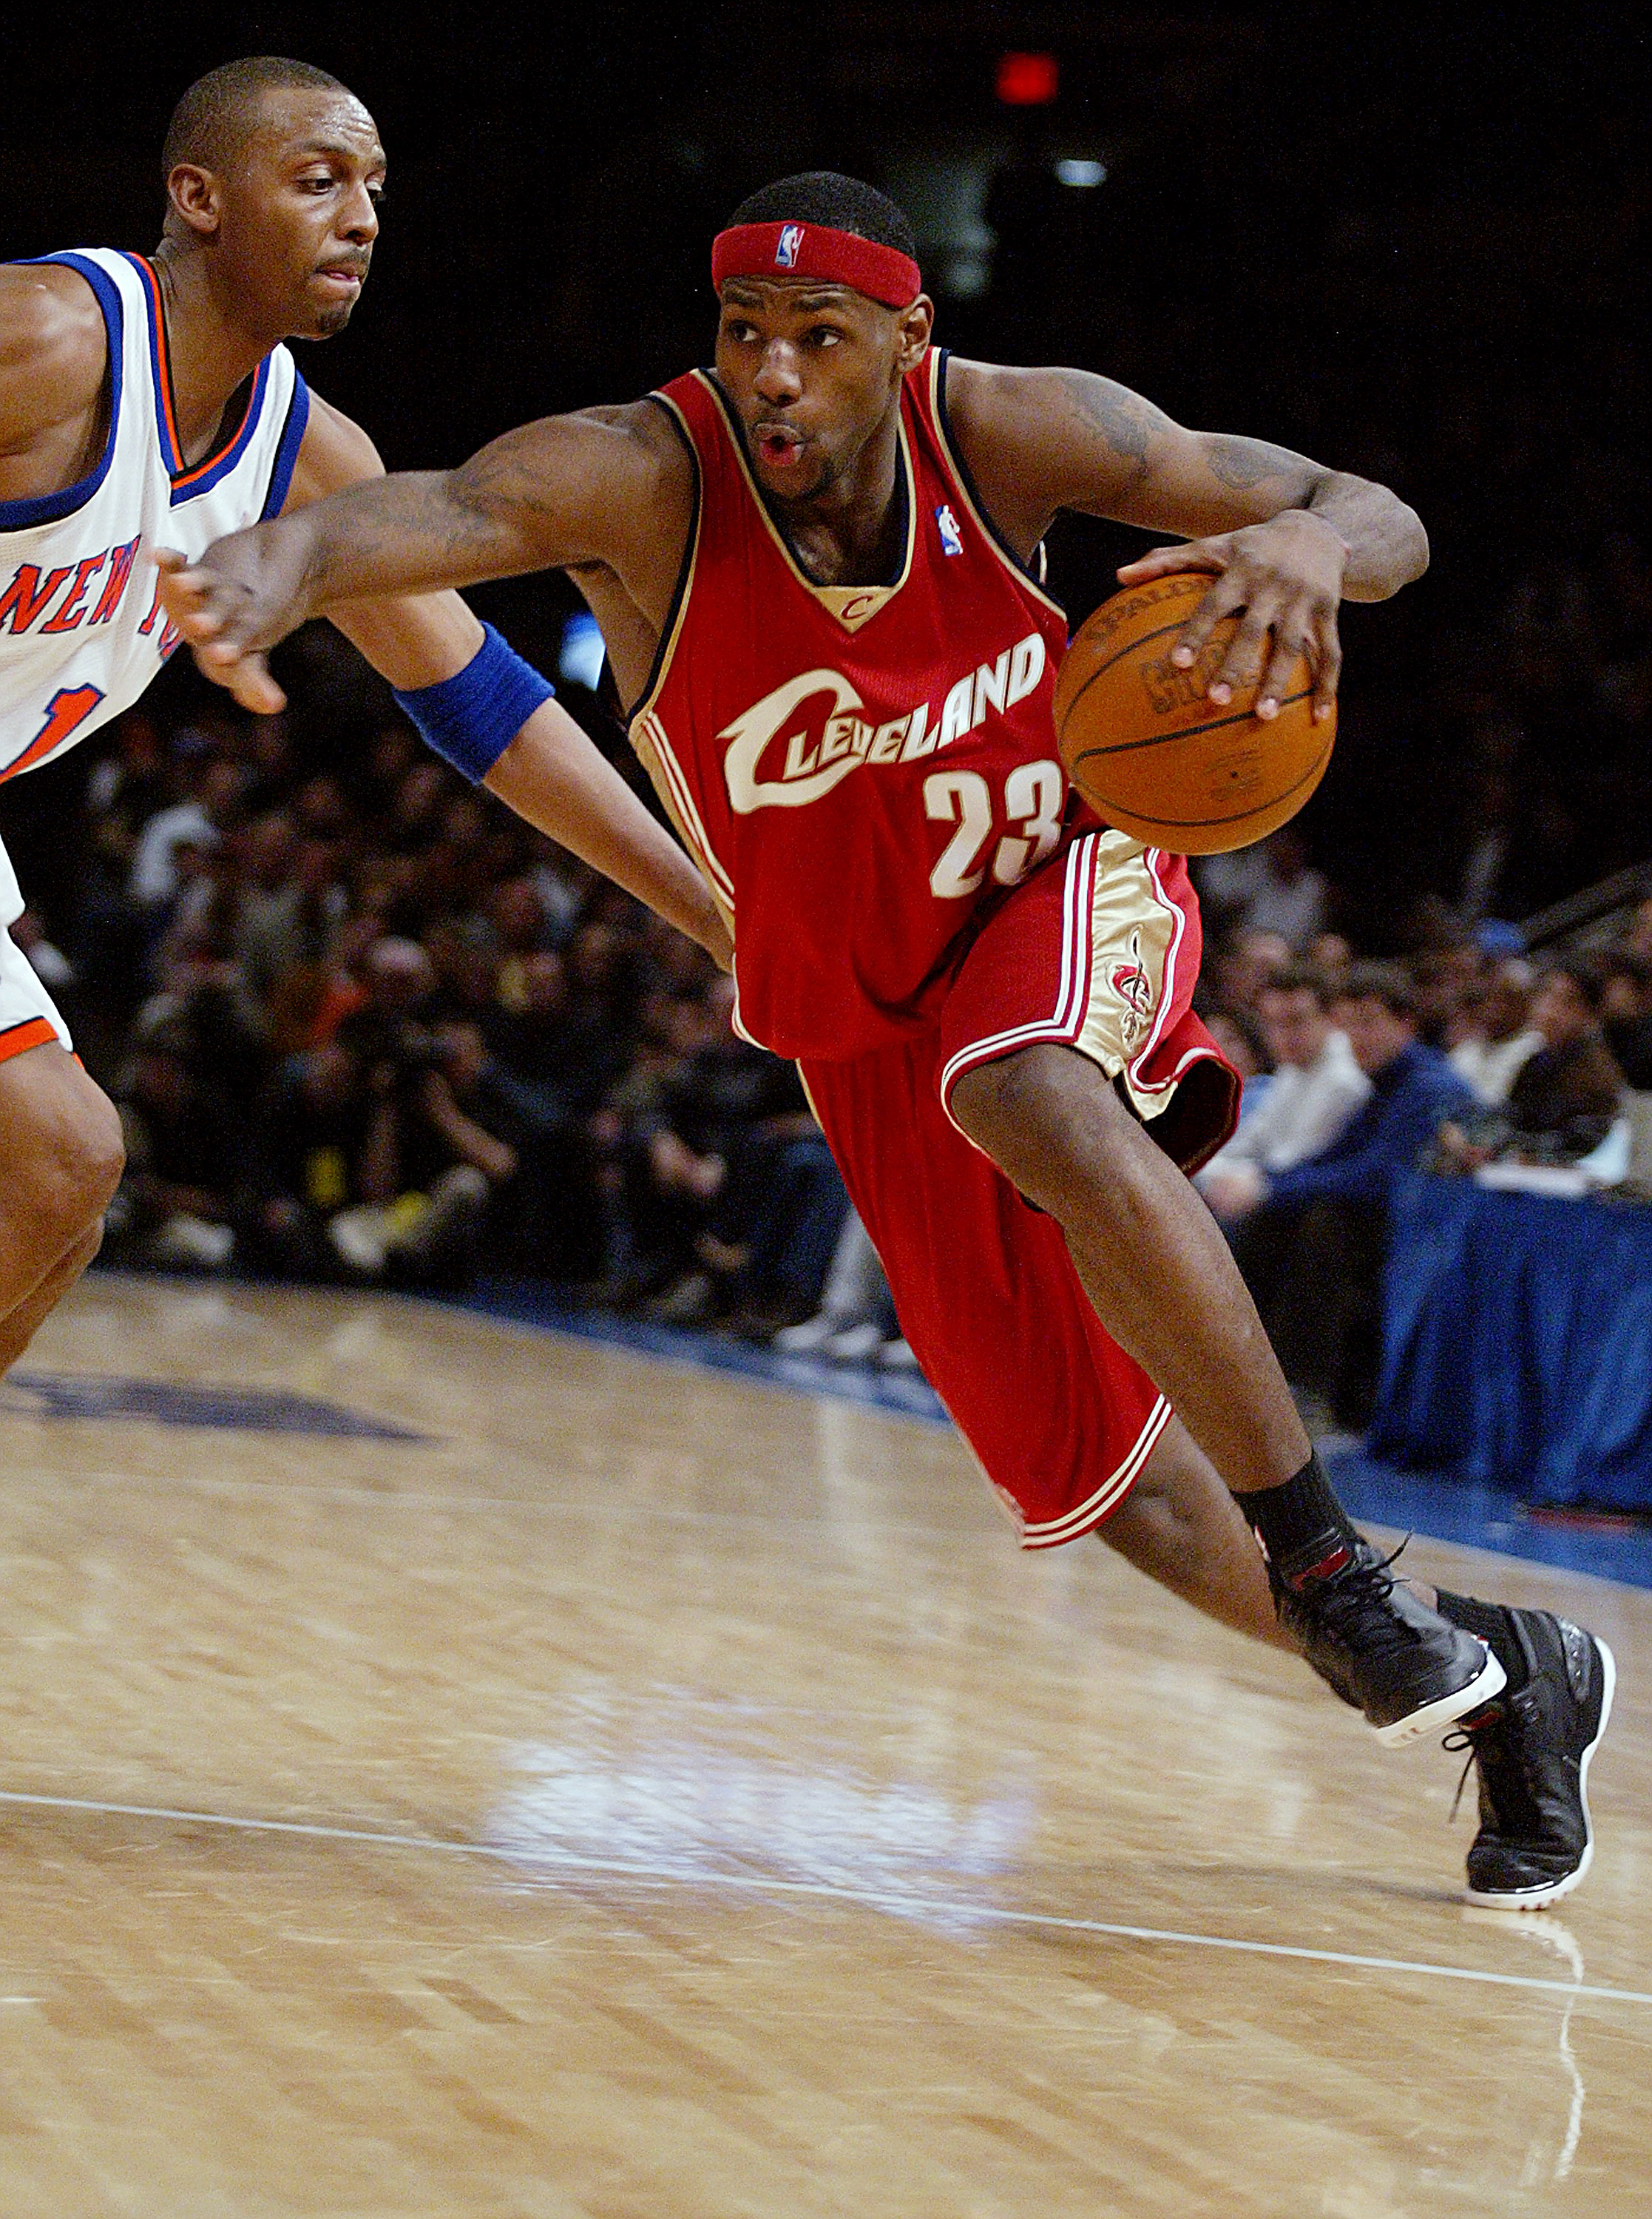 LeBron James zu Beginn seiner Karriere, als er für die Cleveland Cavaliers spielte, etwa 2002 | Quelle: Getty Images